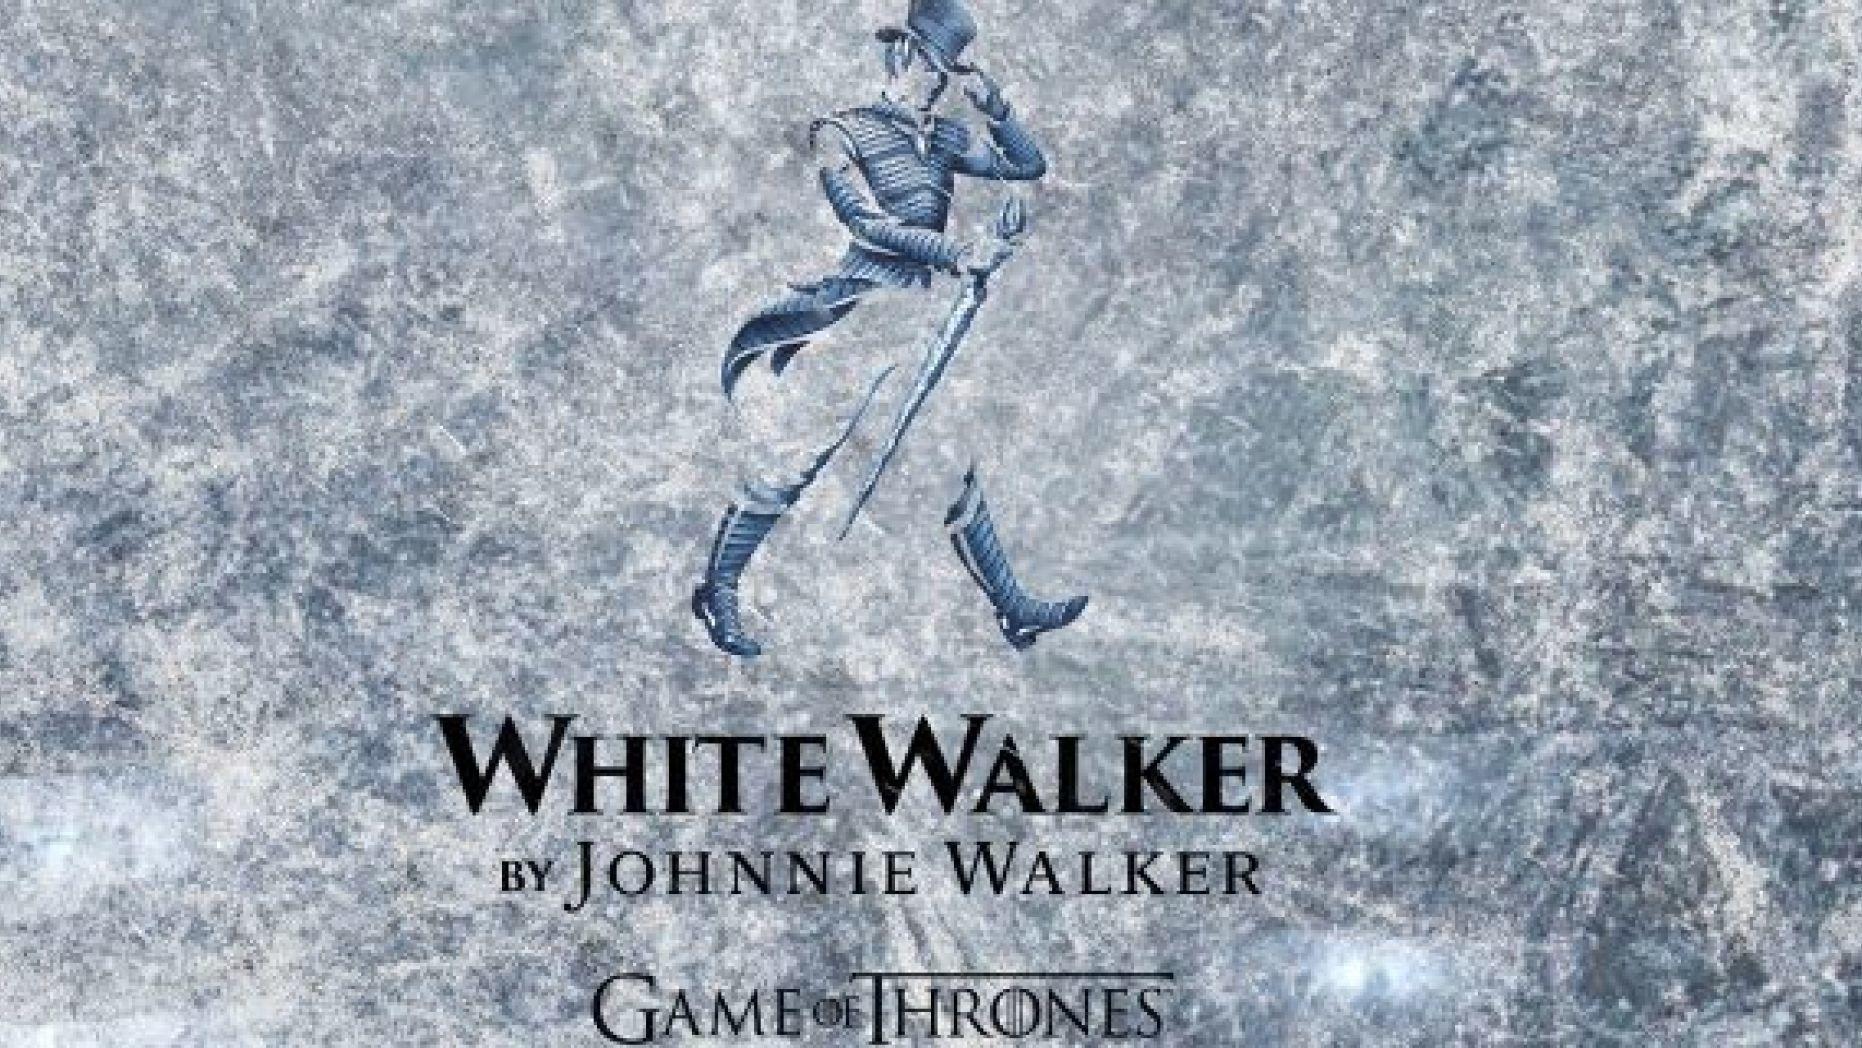 Whiskey Johnny Walker Logo - White Walker: Johnnie Walker debuting 'Game of Thrones'-inspired